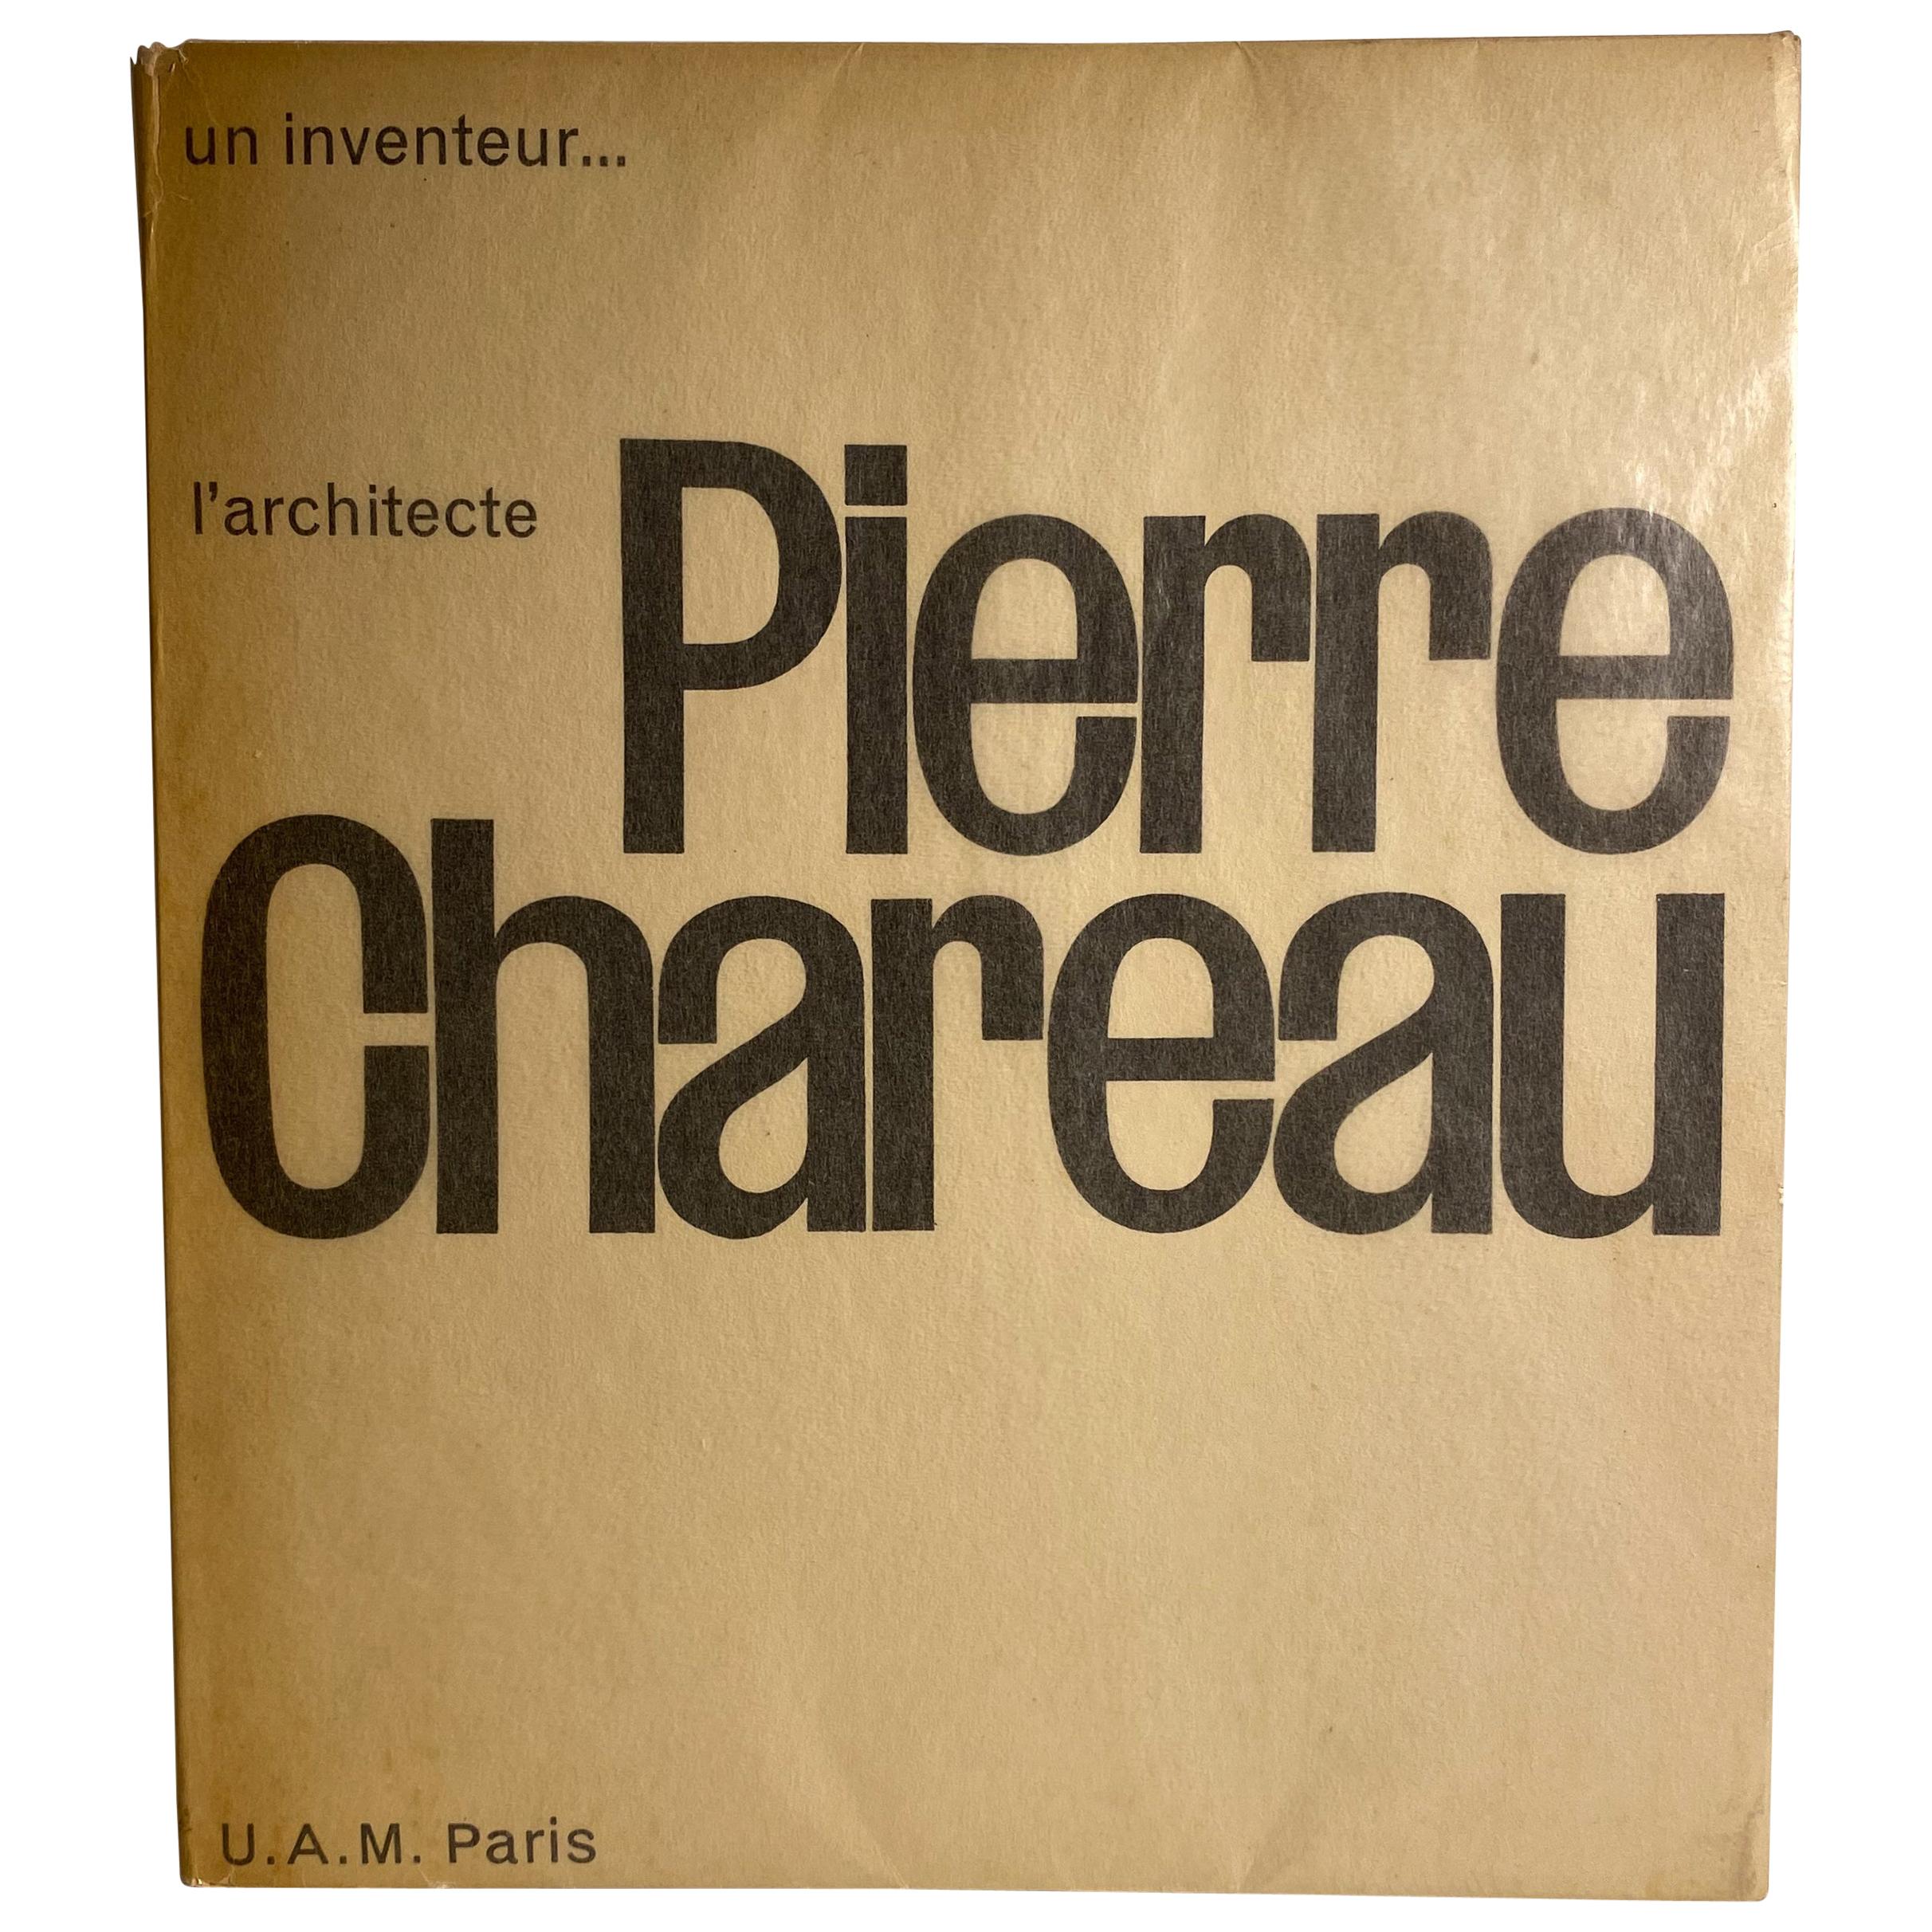 Pierre Chareau: Un Inventeur, l'architecte